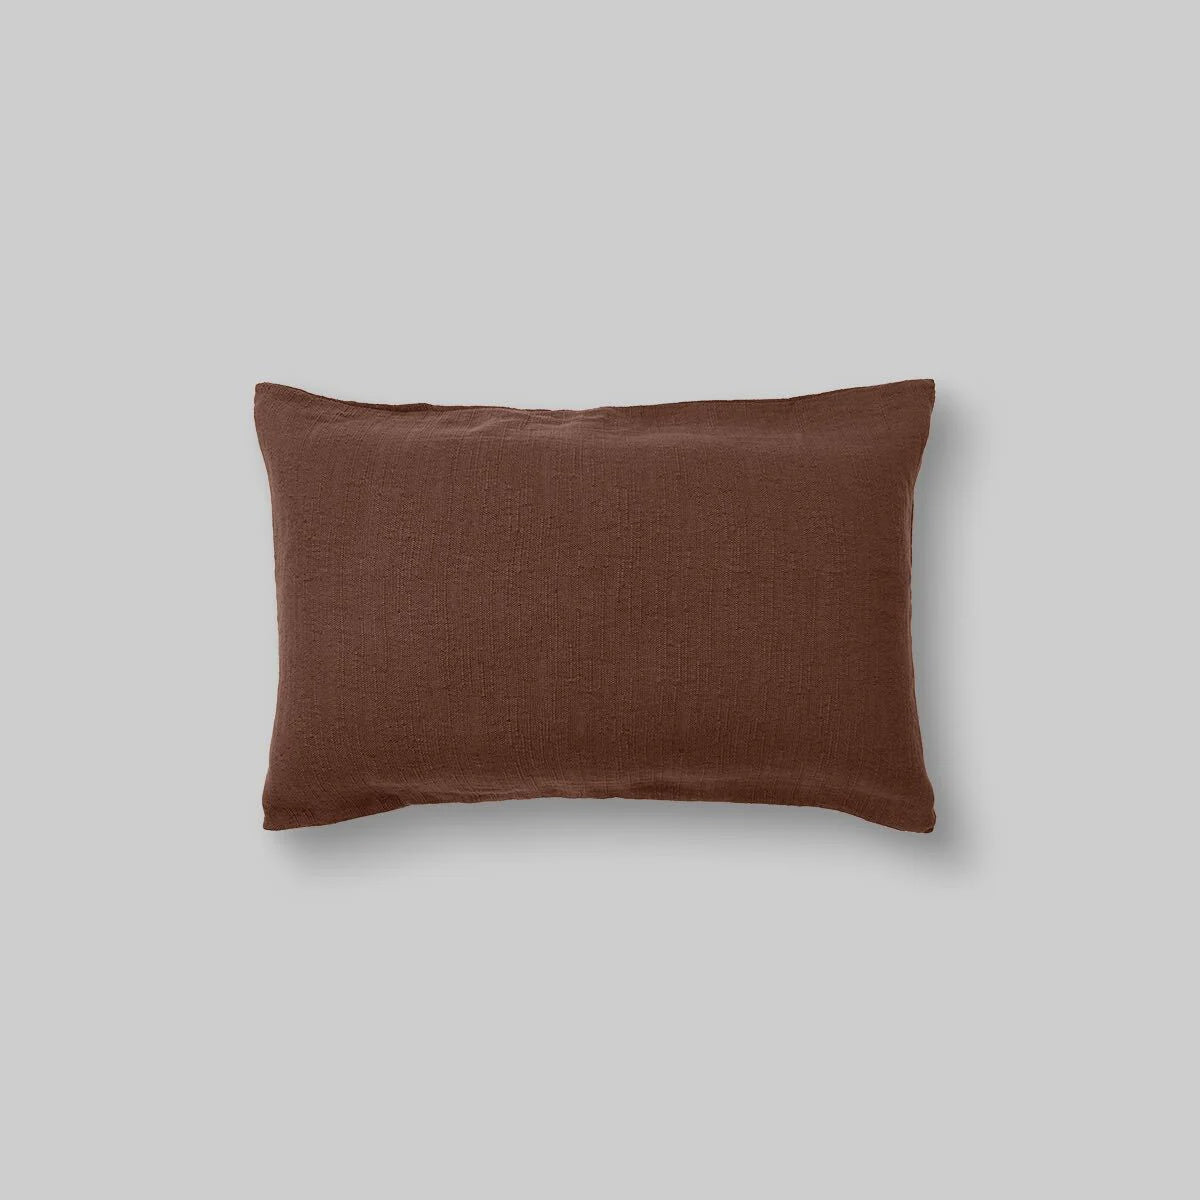 Hemp, Linen & Cotton Pillowslip Set in Walnut